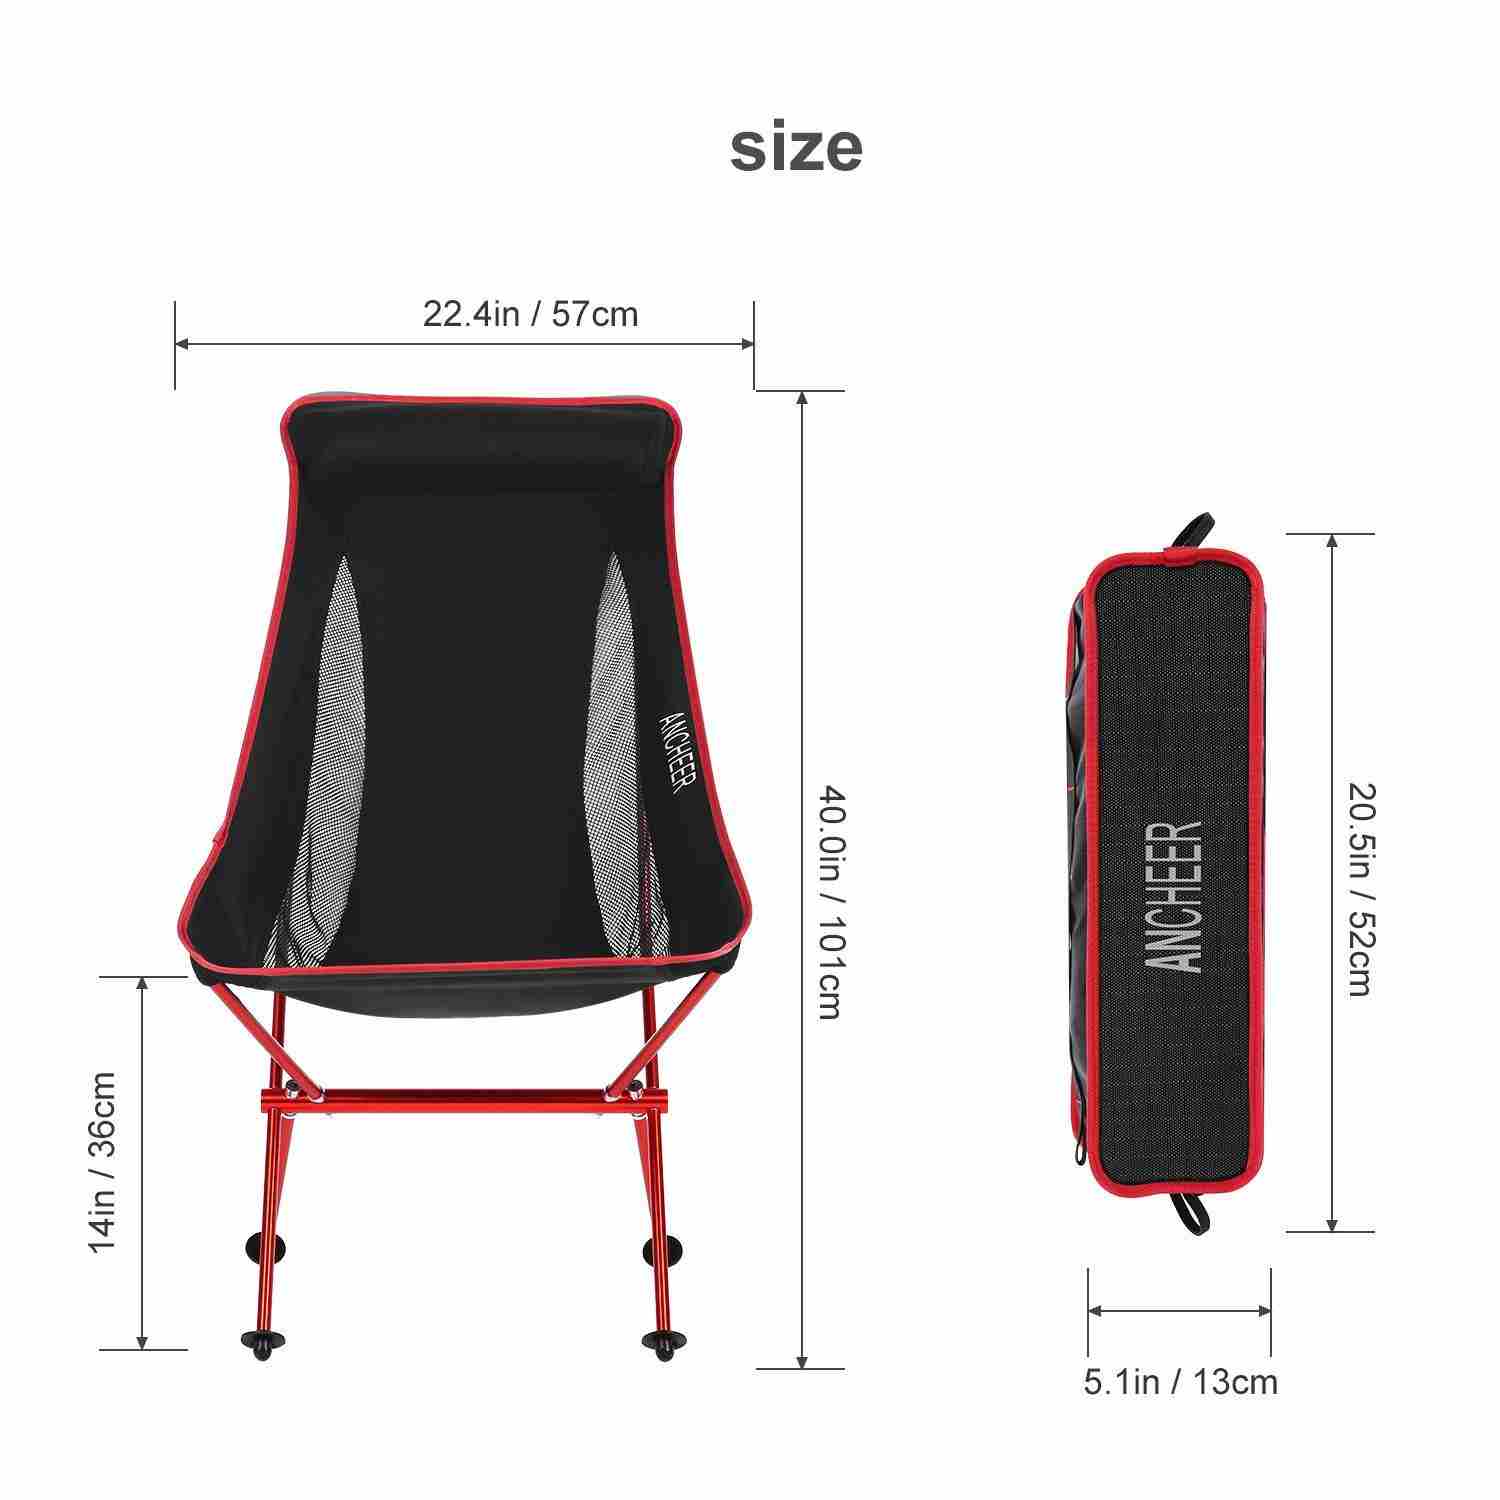 fashionbazaar-camping-chair-set